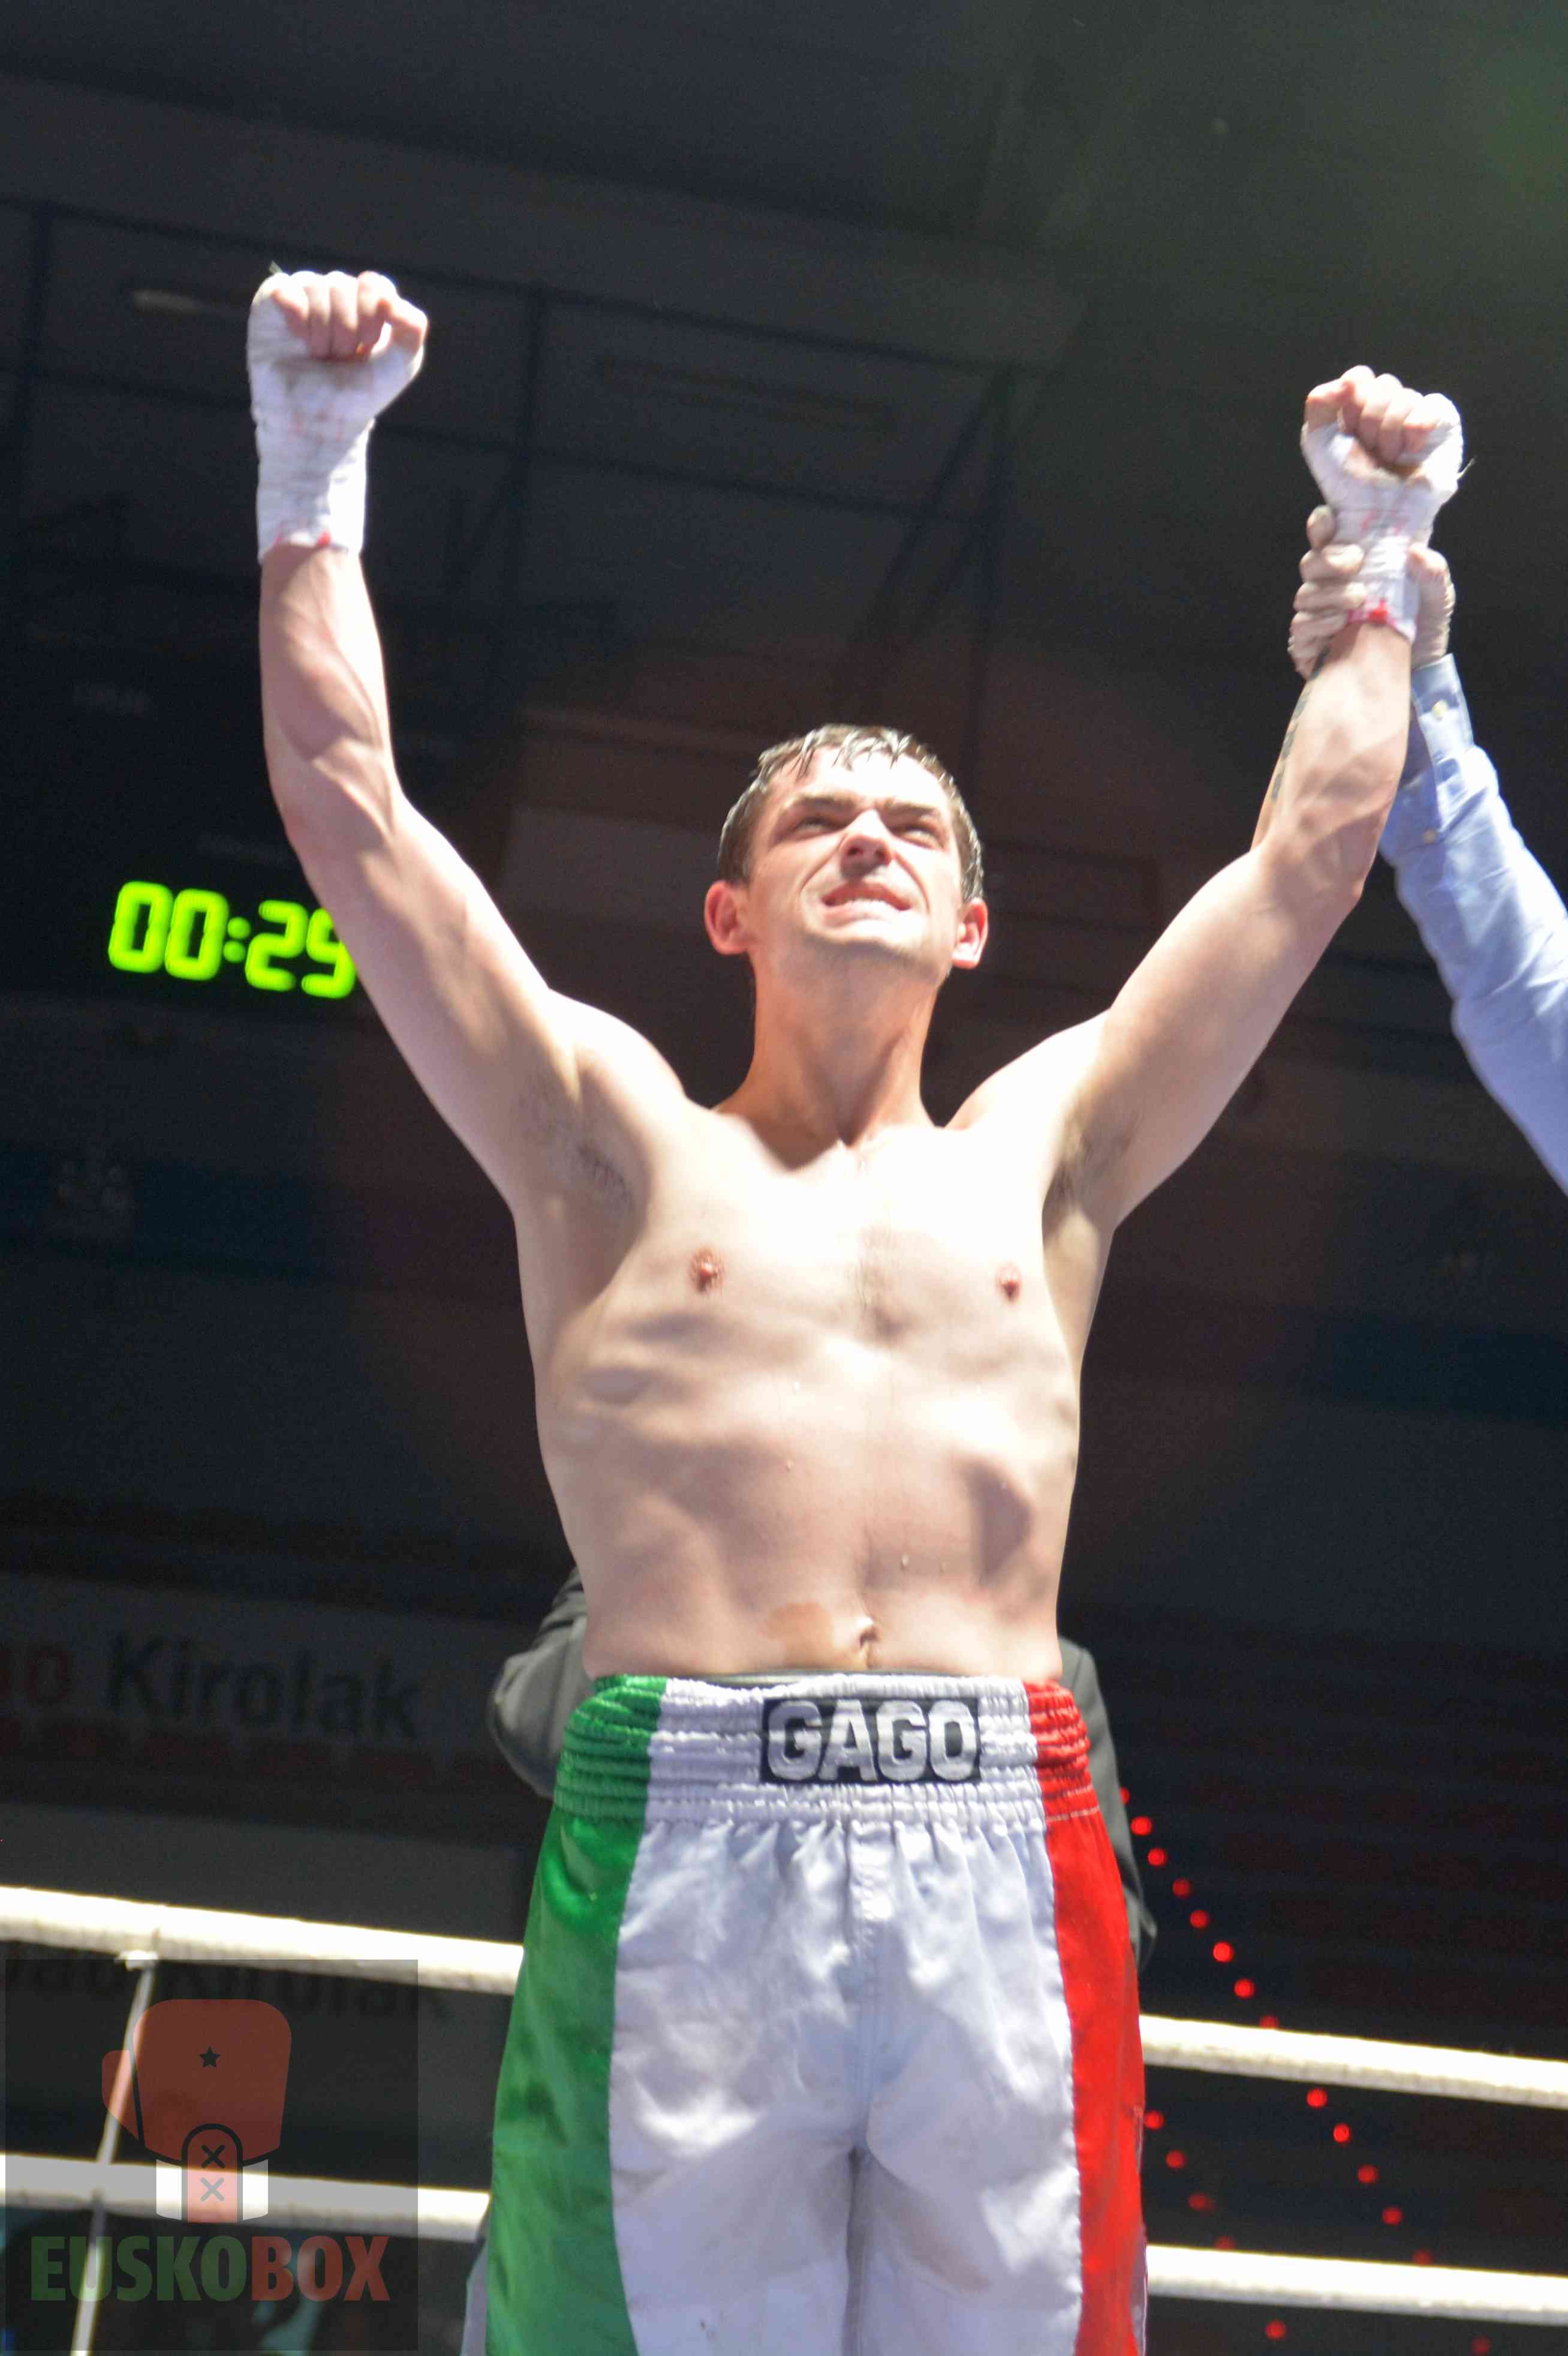 El boxeador profesional Andoni Gago es proclamado vencedor tras un combate